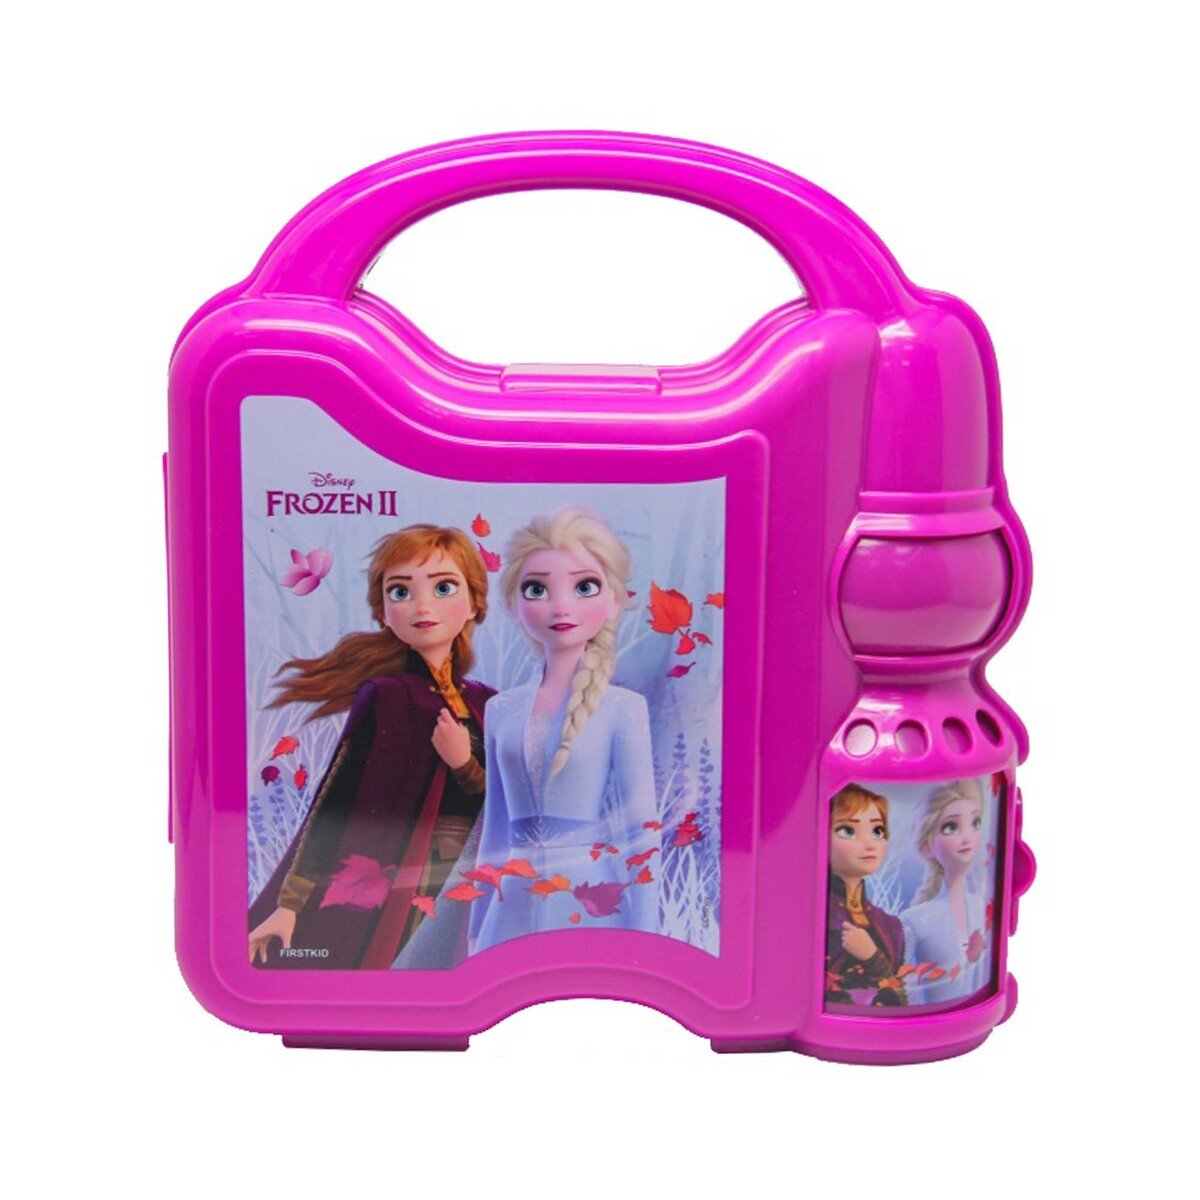 Frozen Lunch Box For Girls Kids Bundle Zuland Frozen Algeria